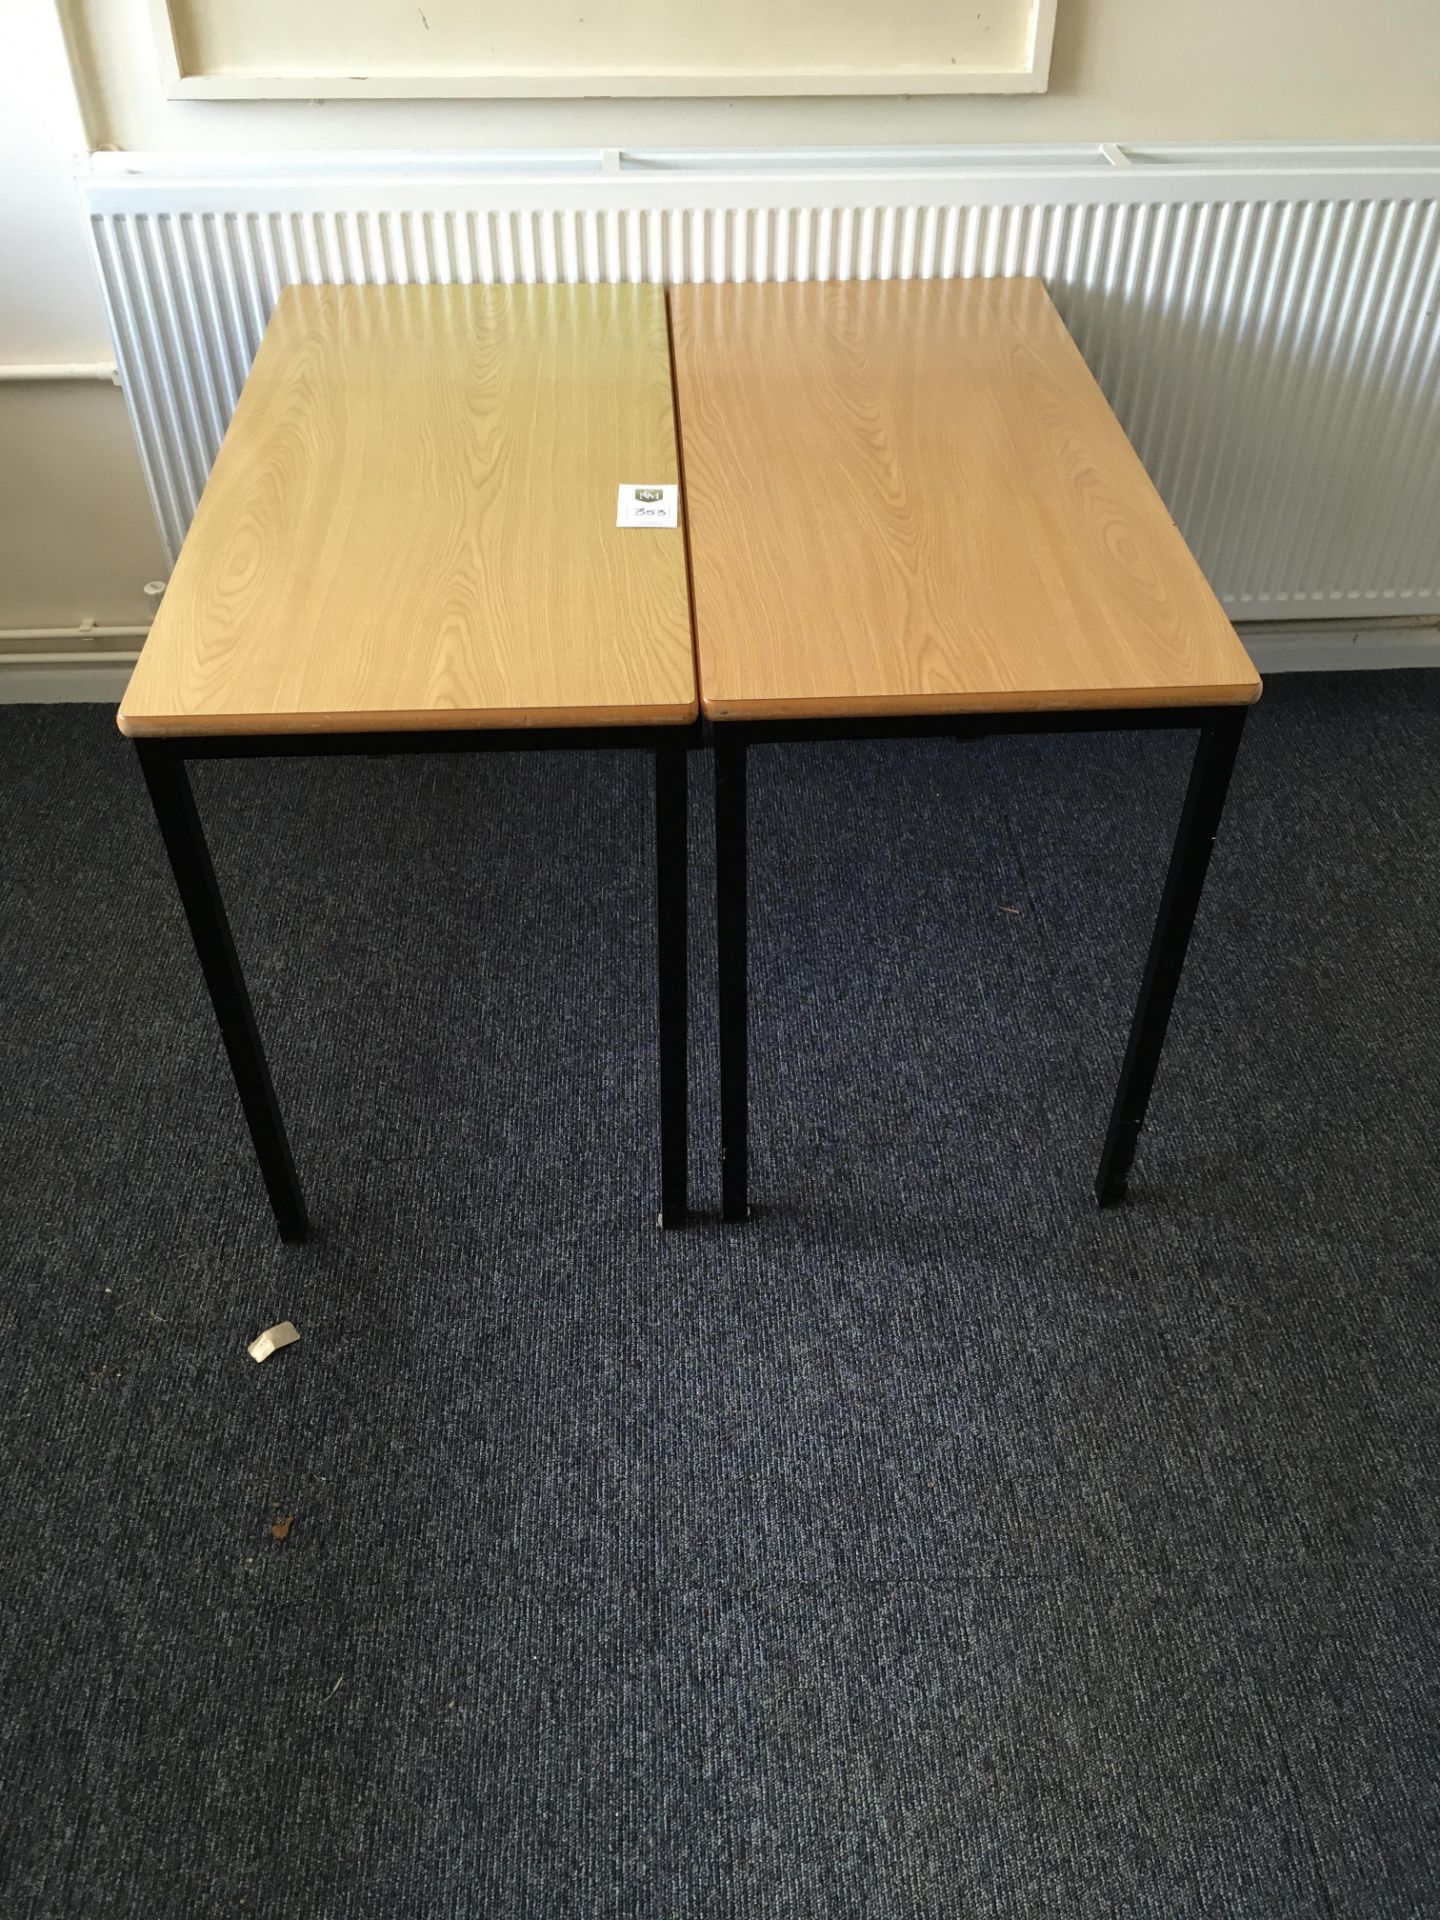 2 x Classroom Tables